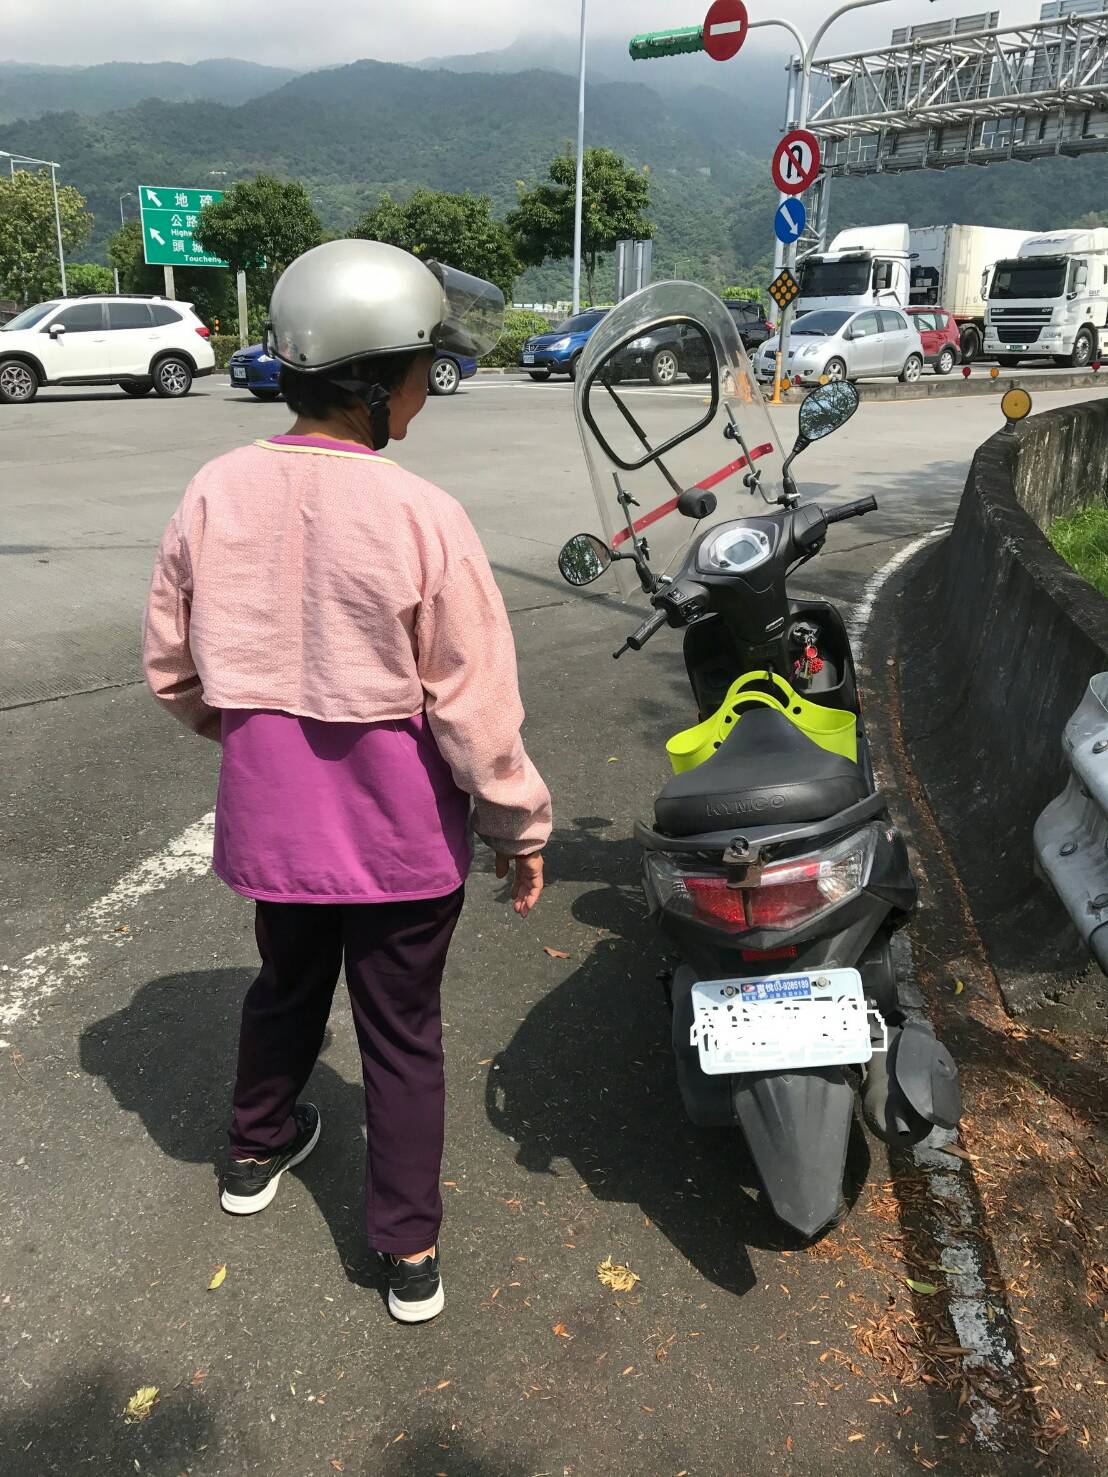 62歲老婦騎機車誤上國道 遭警攔停護送脫困